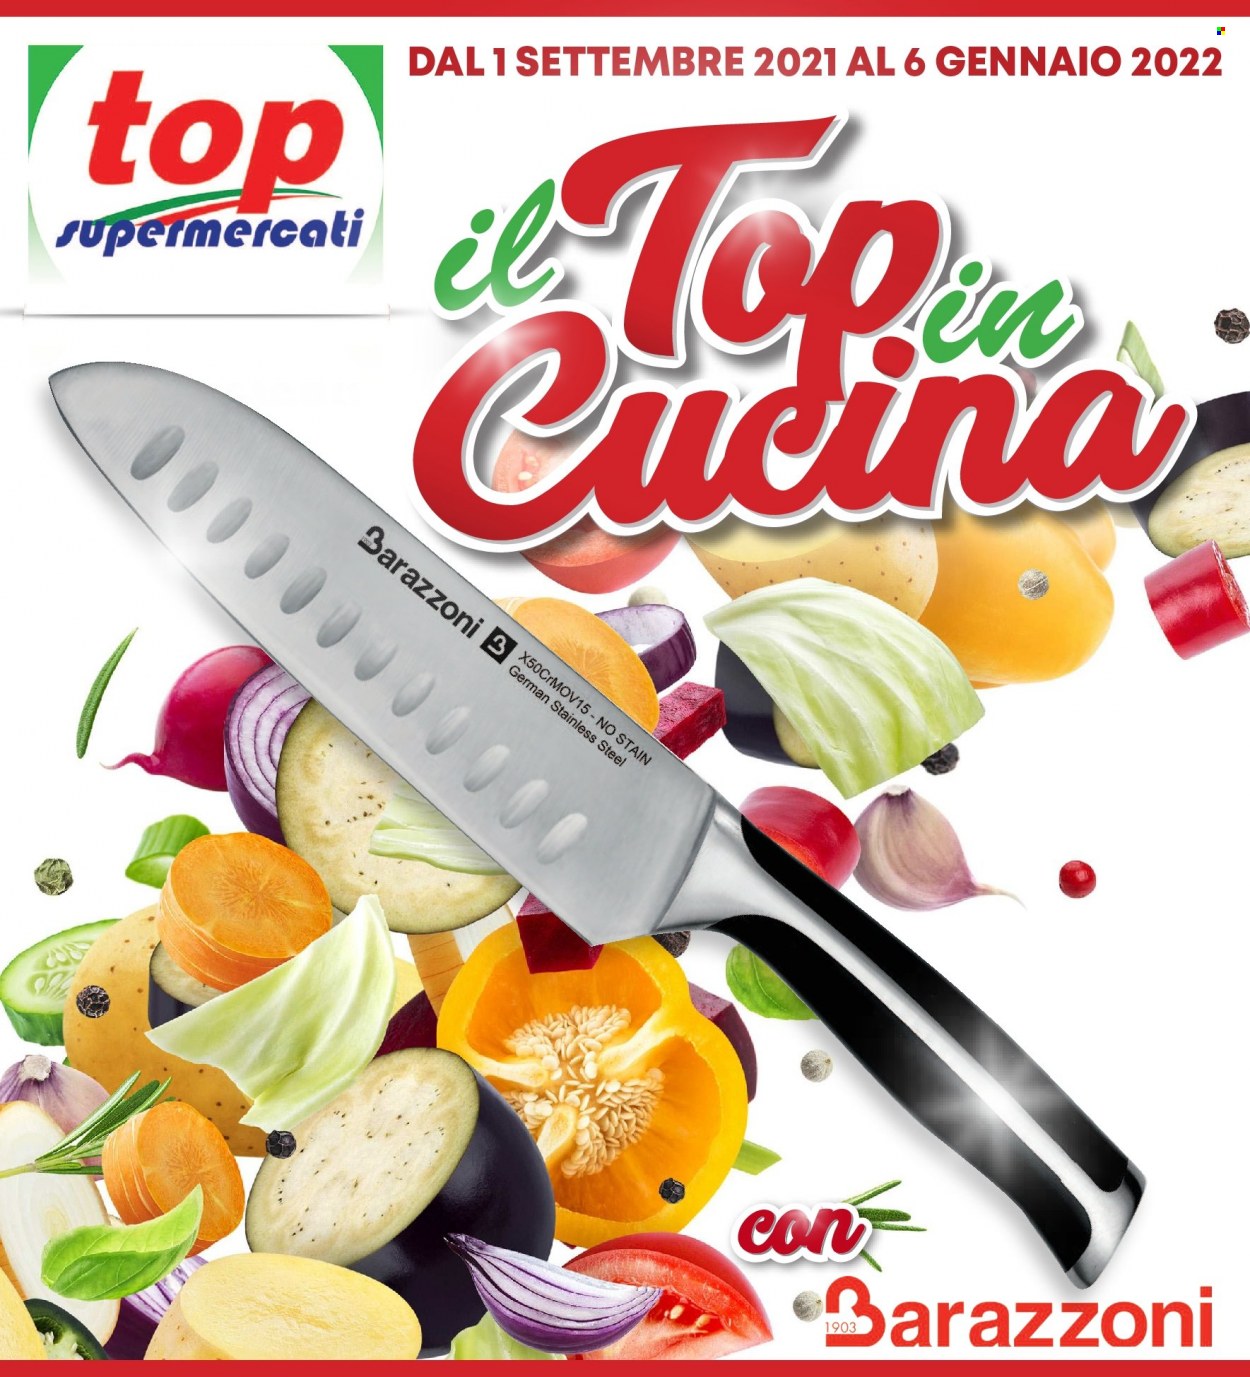 Volantino Top Supermercati - 1.9.2021 - 6.1.2022.